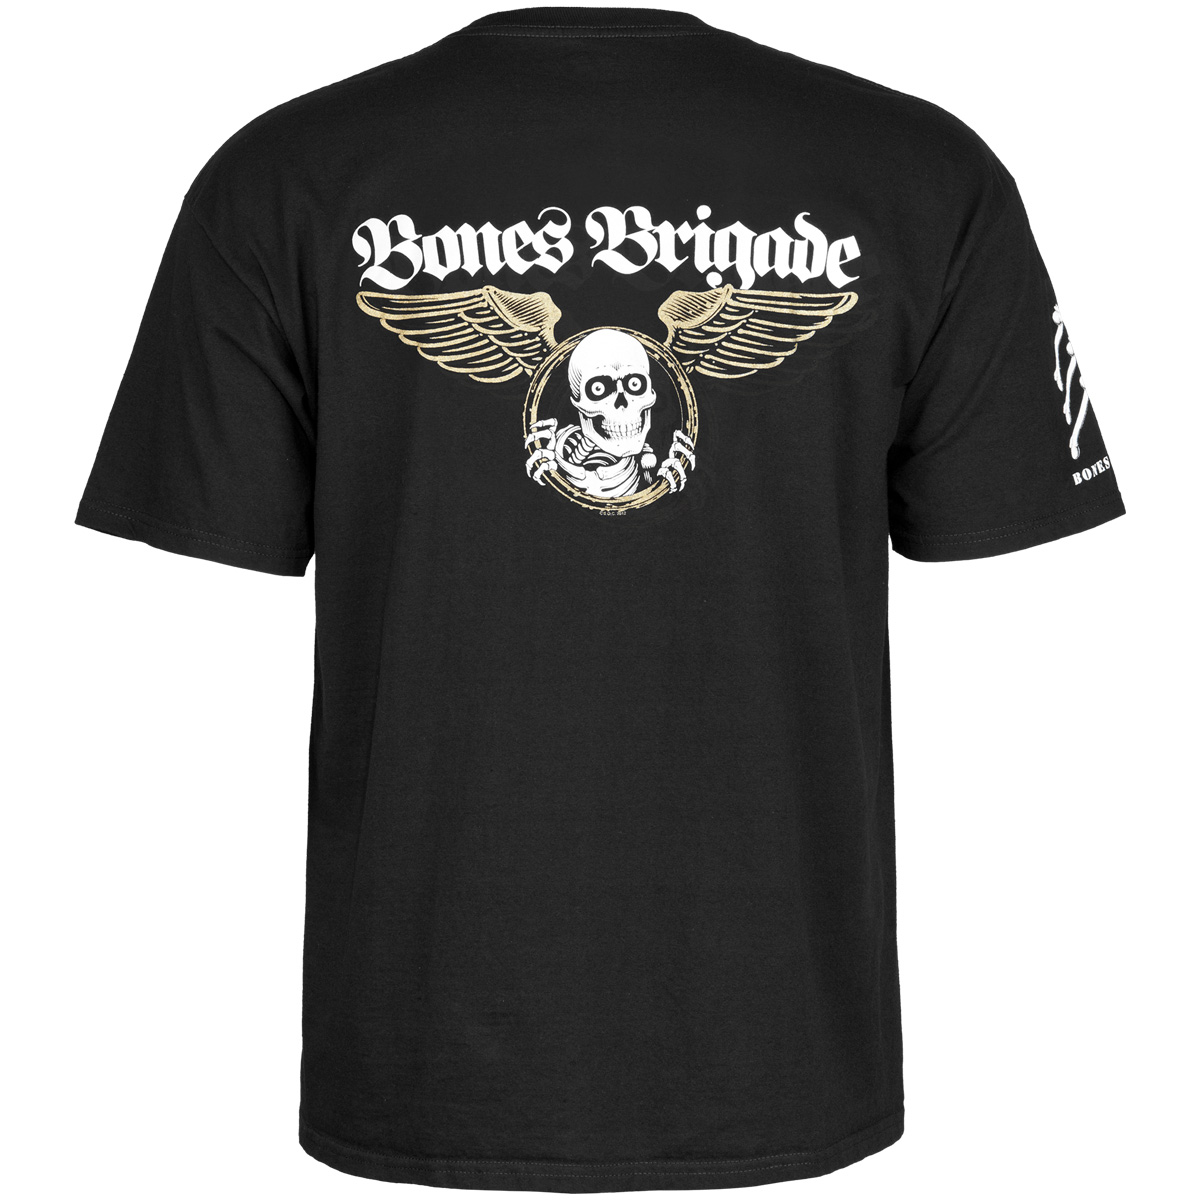 Powell Peralta Bones Brigade Autobiography T-Shirt Black 